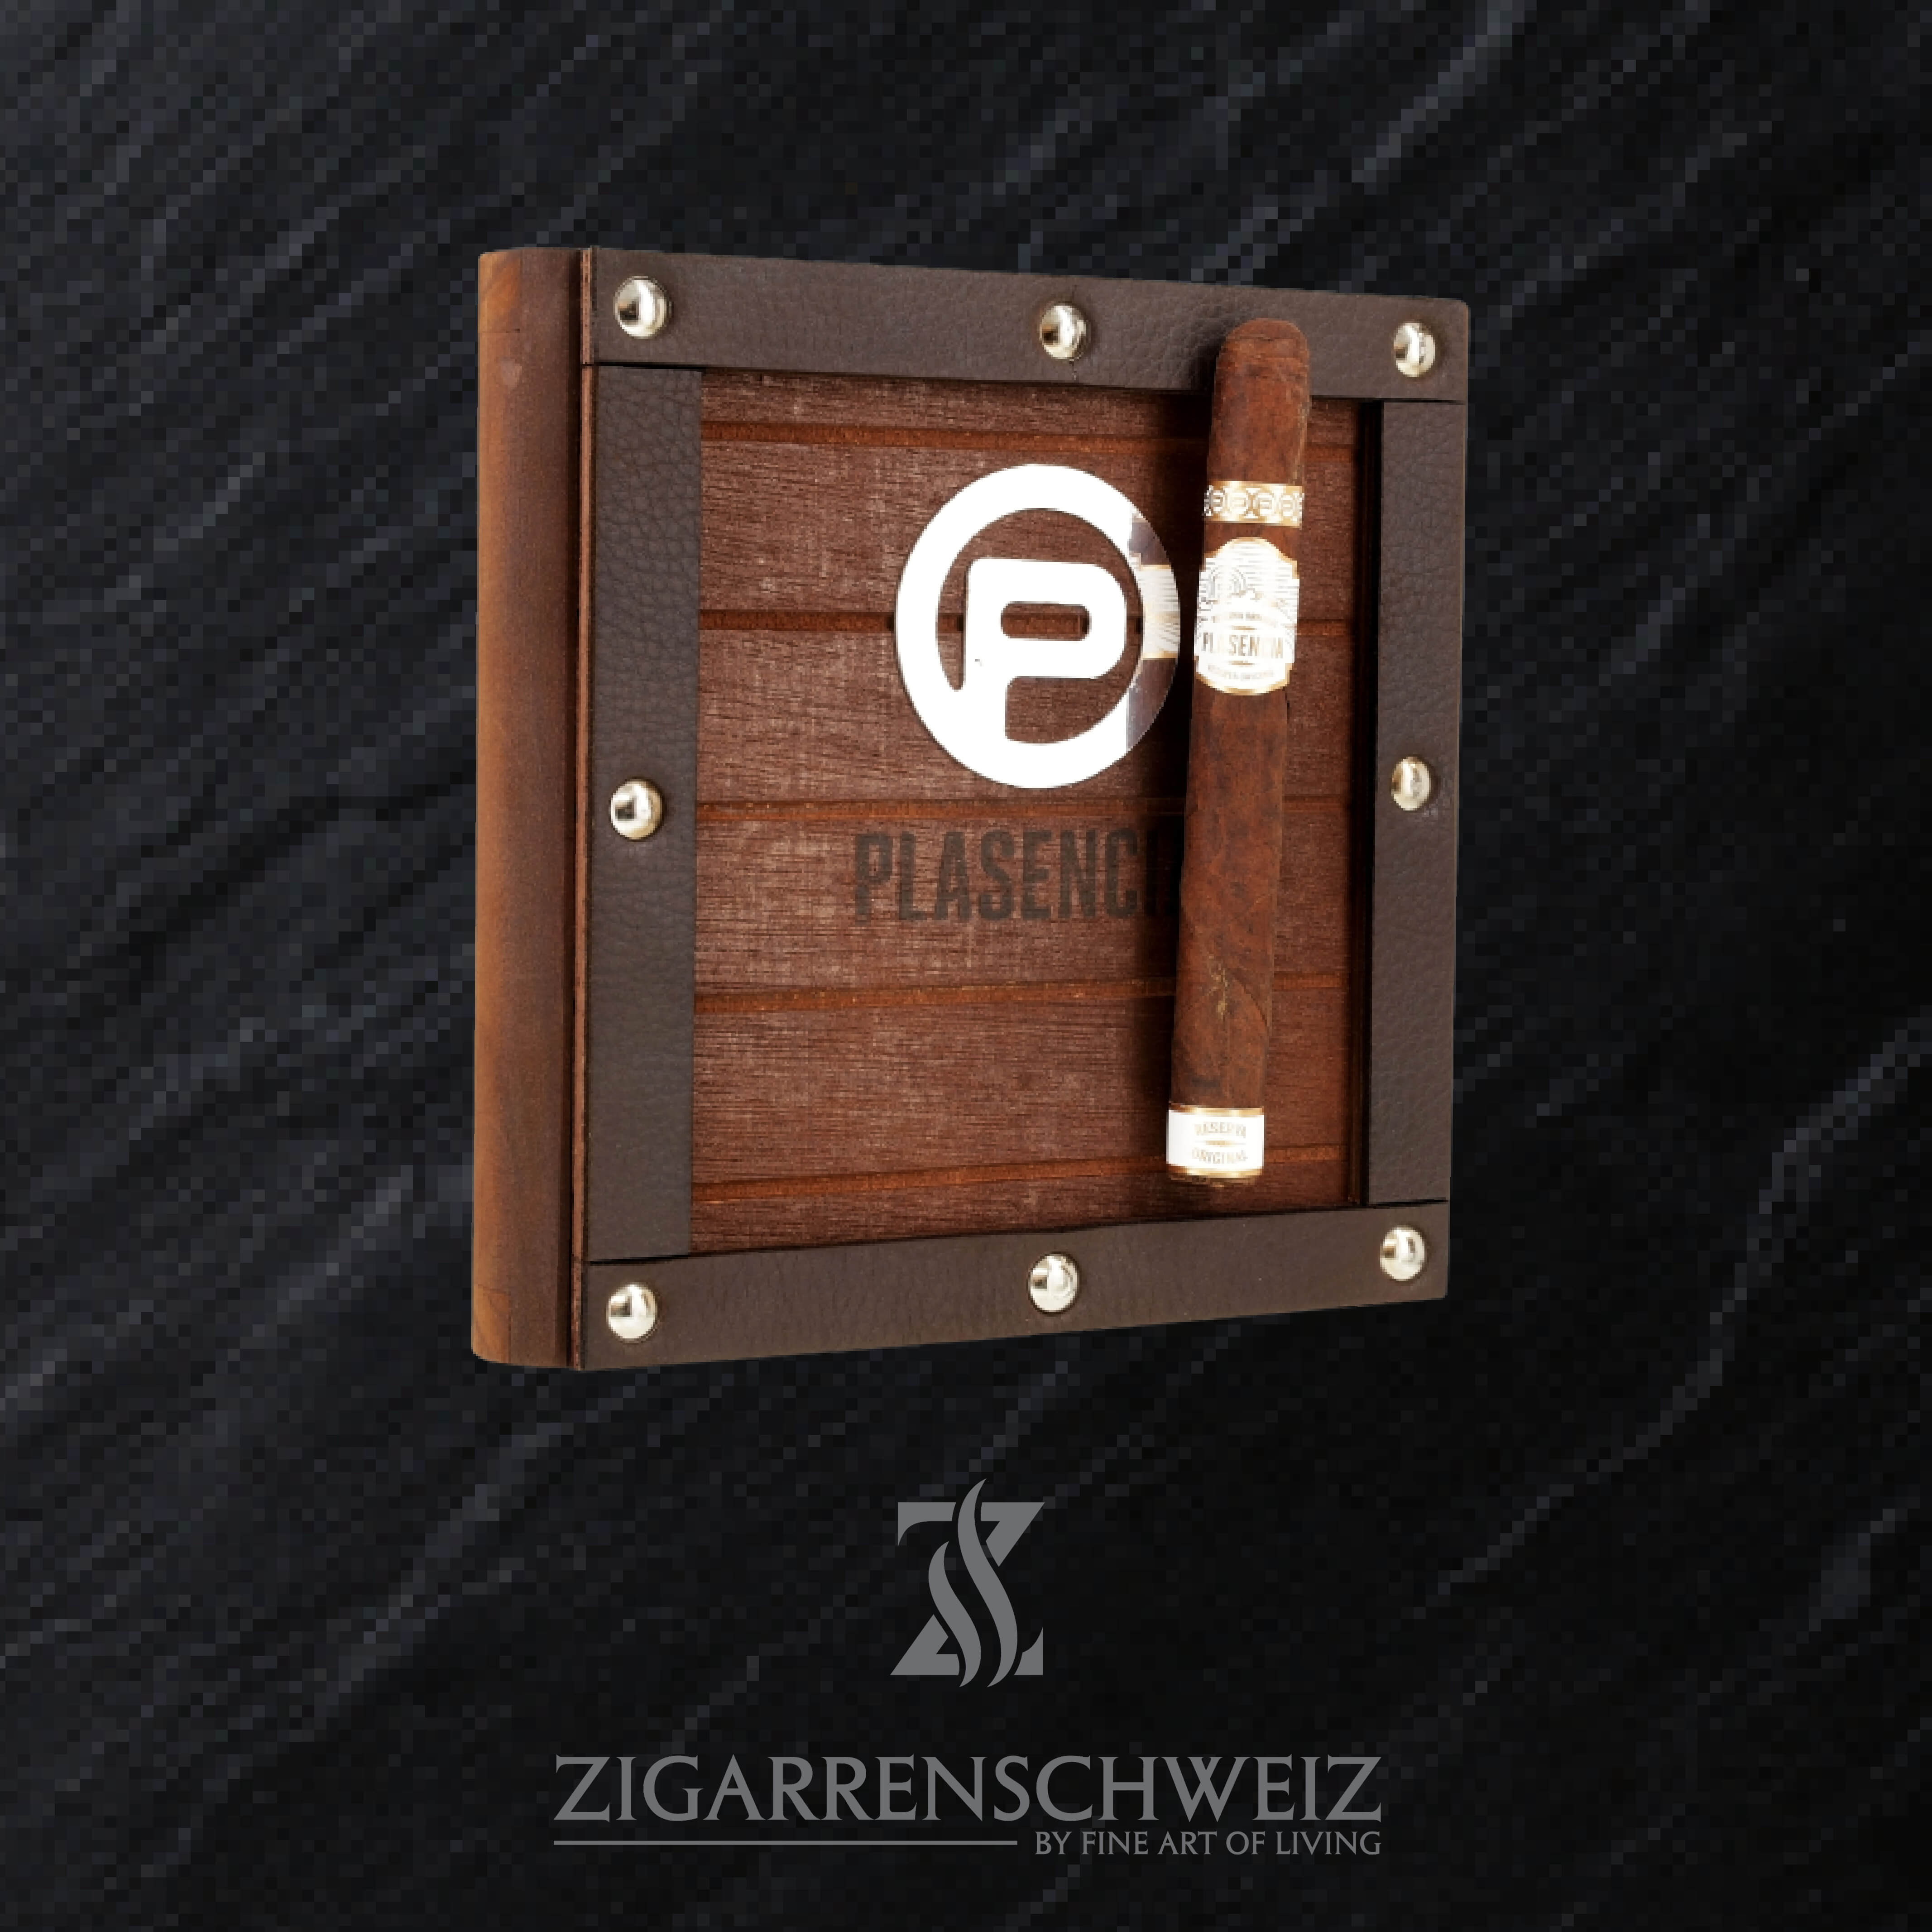 Plasencia Reserva Original Corona Zigarren Kiste geschlossen